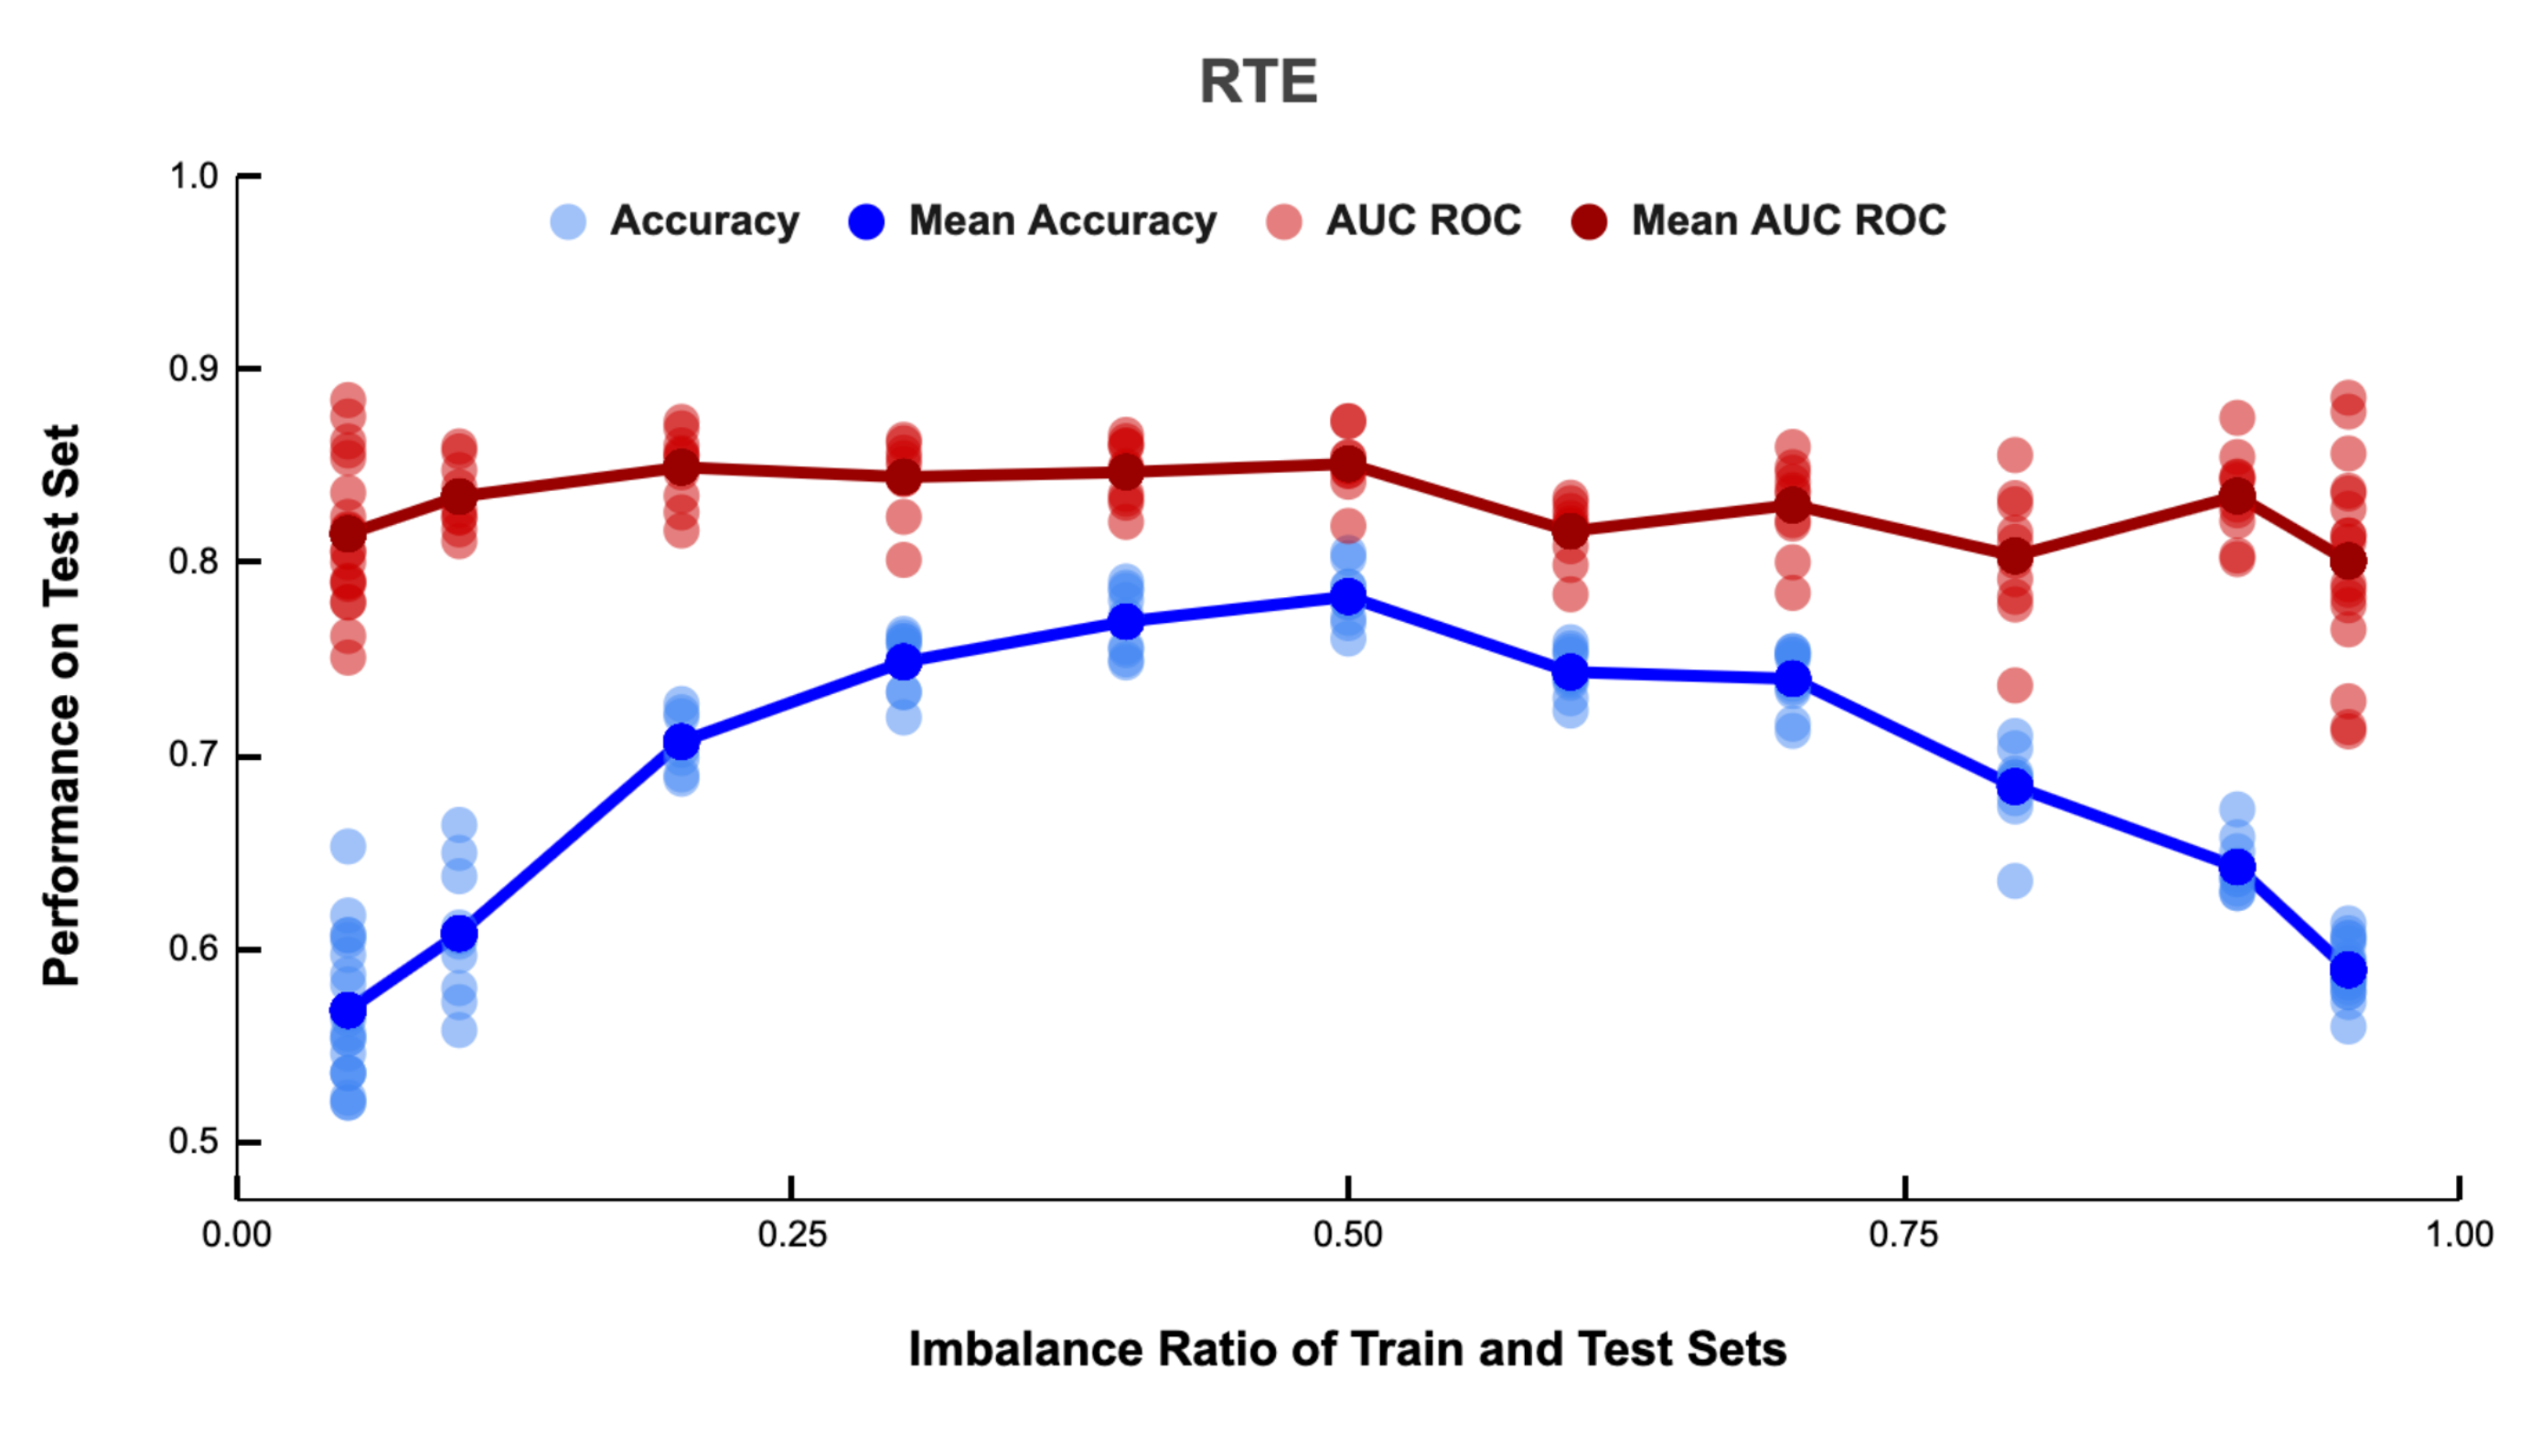 Effect of imbalance on RTE